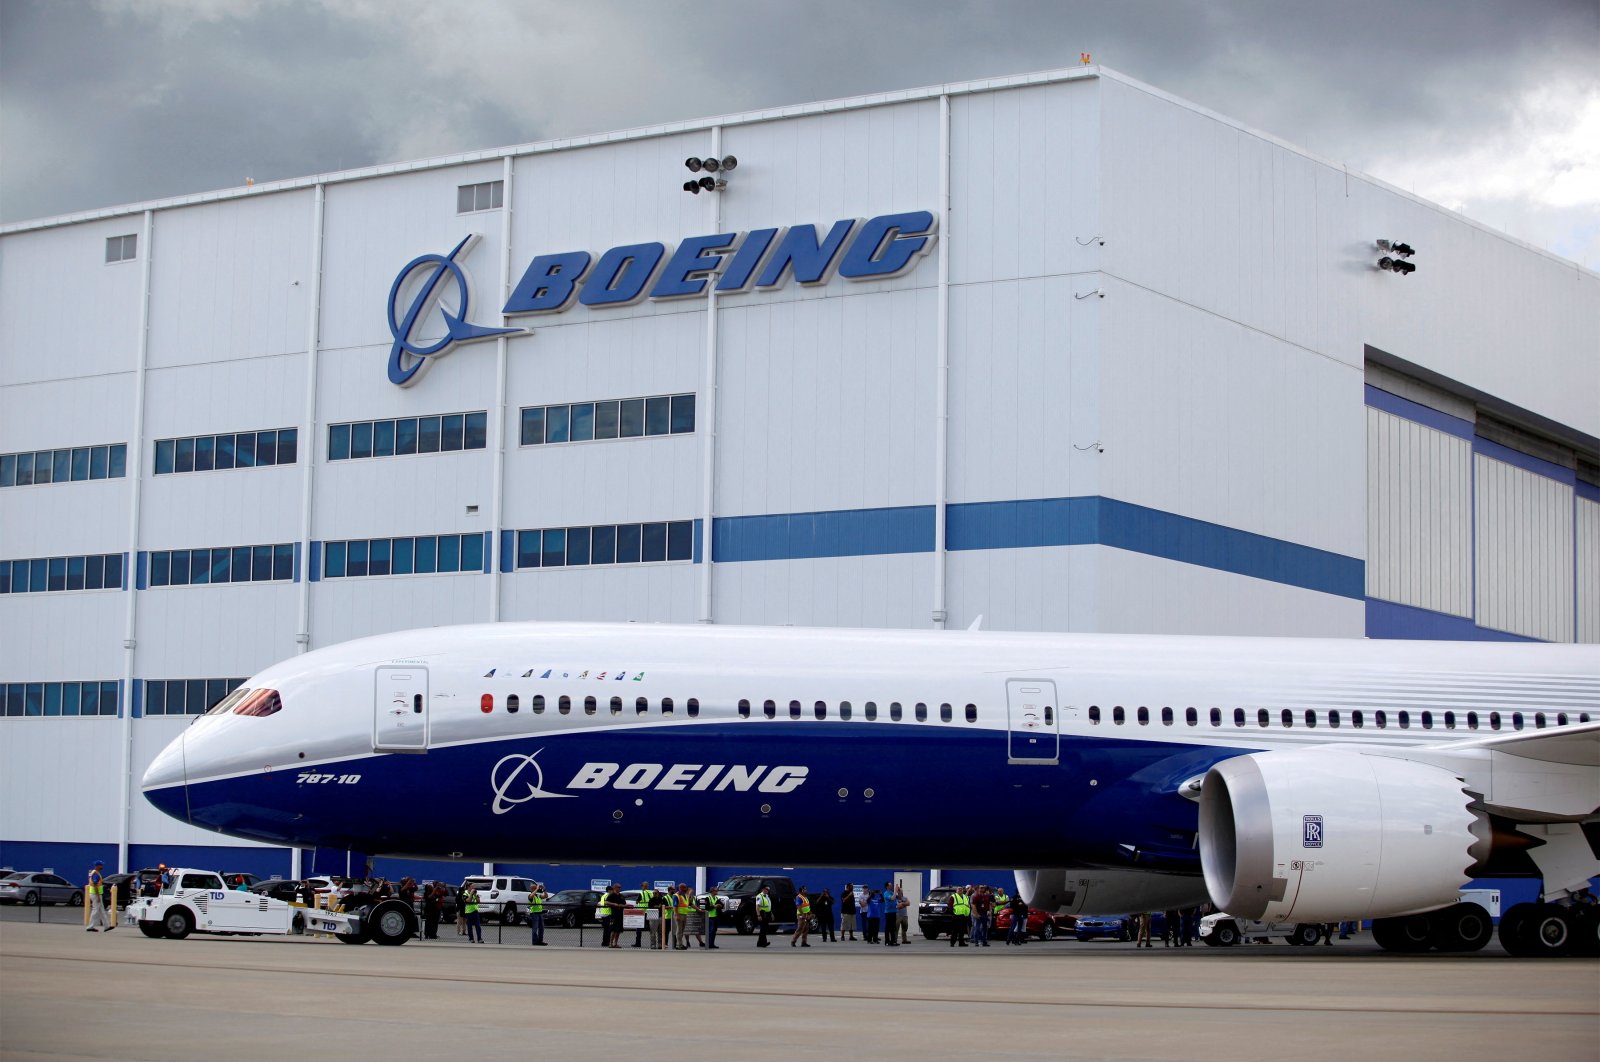 Boeing melompat pada kereta musik metaverse dengan pesawat berikutnya